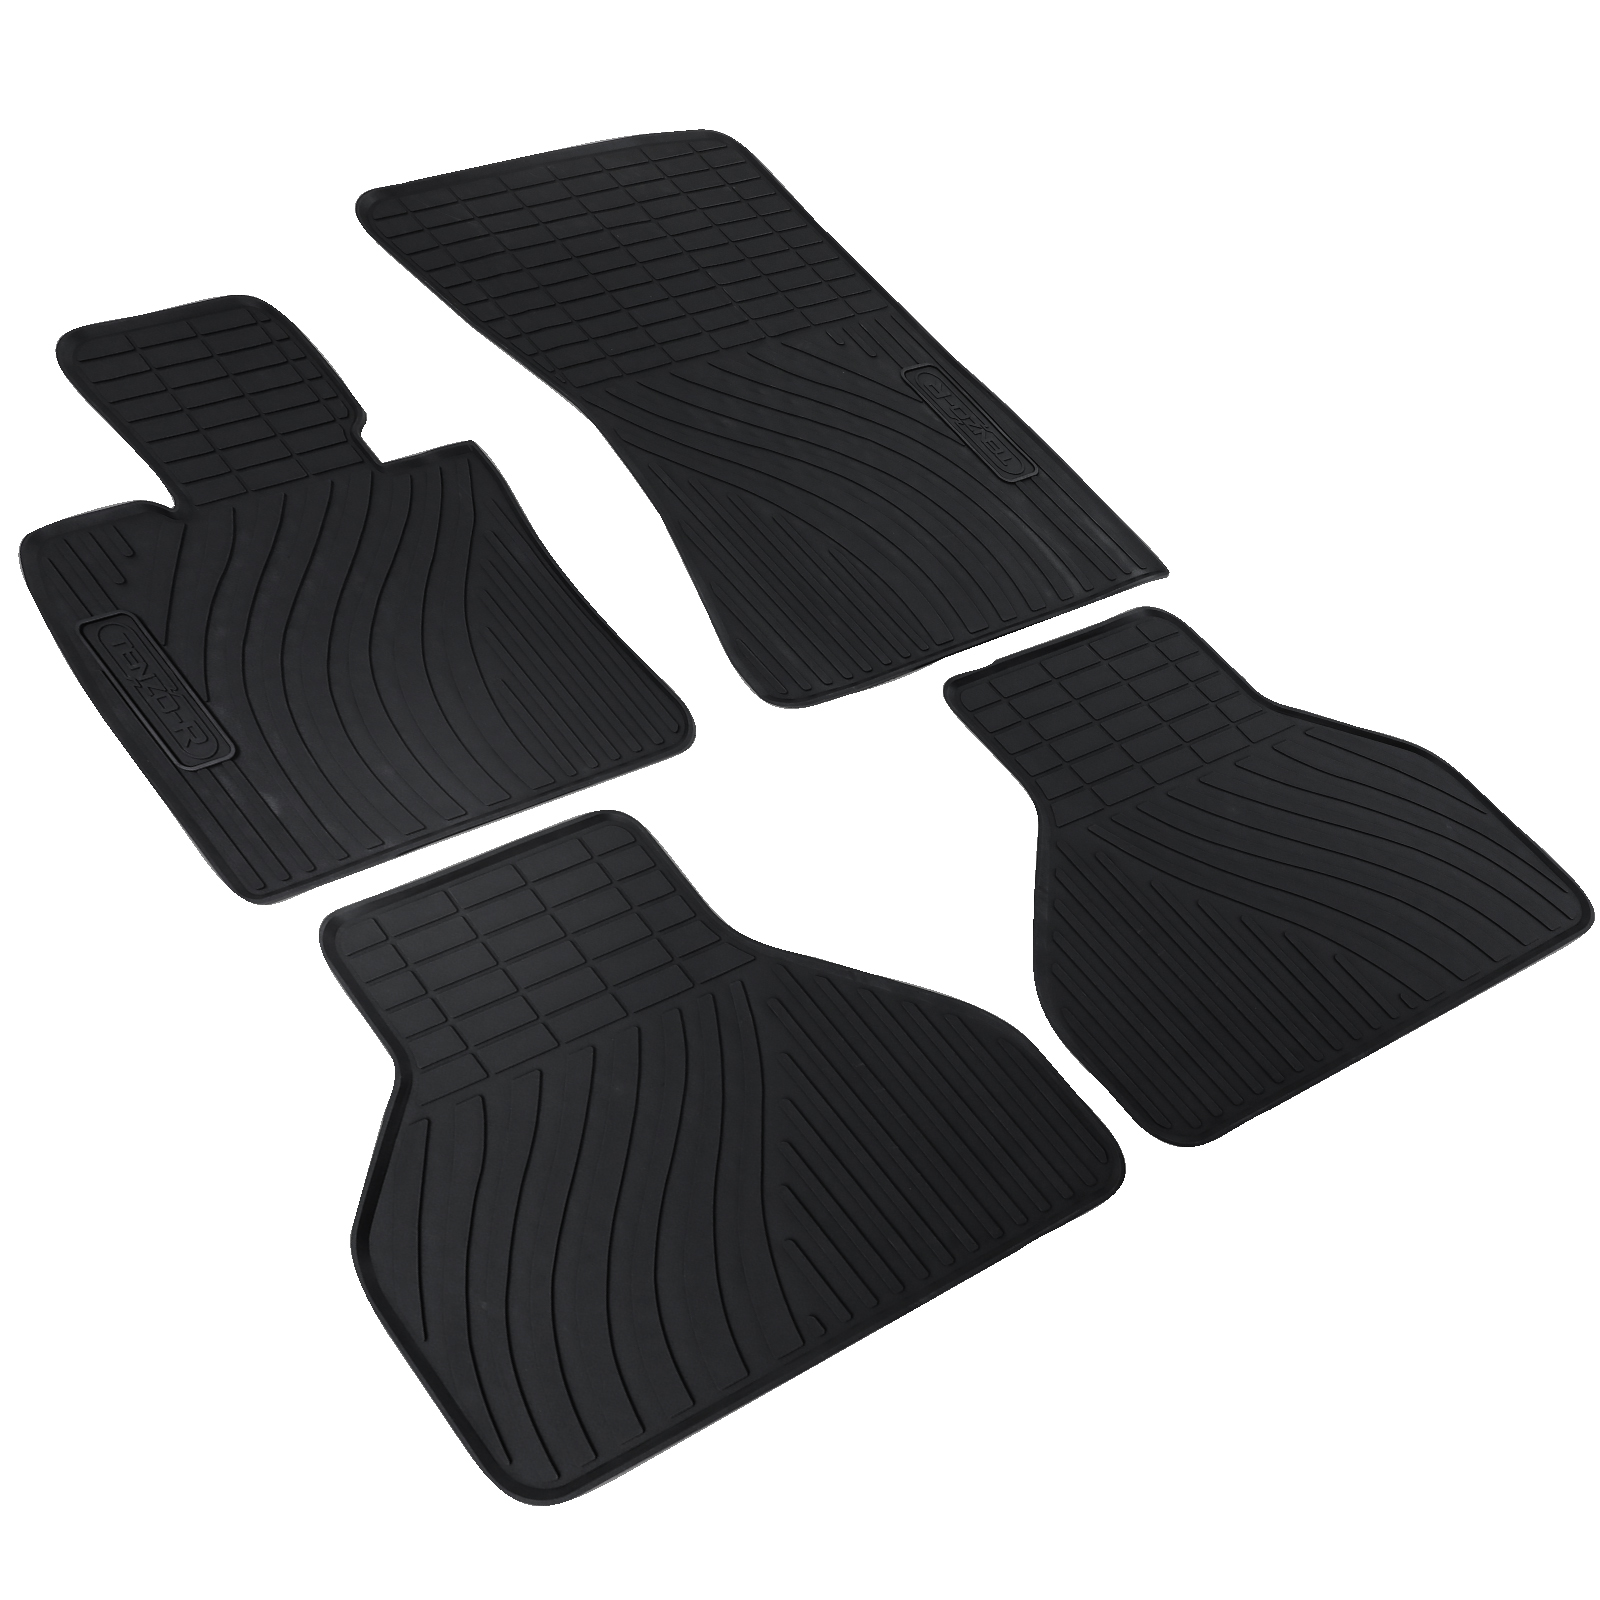 Kunstleder Custom Auto Fußmatten Für Bmw X6 E71 2008-2014 Jahr Interieur  Details Auto Zubehör